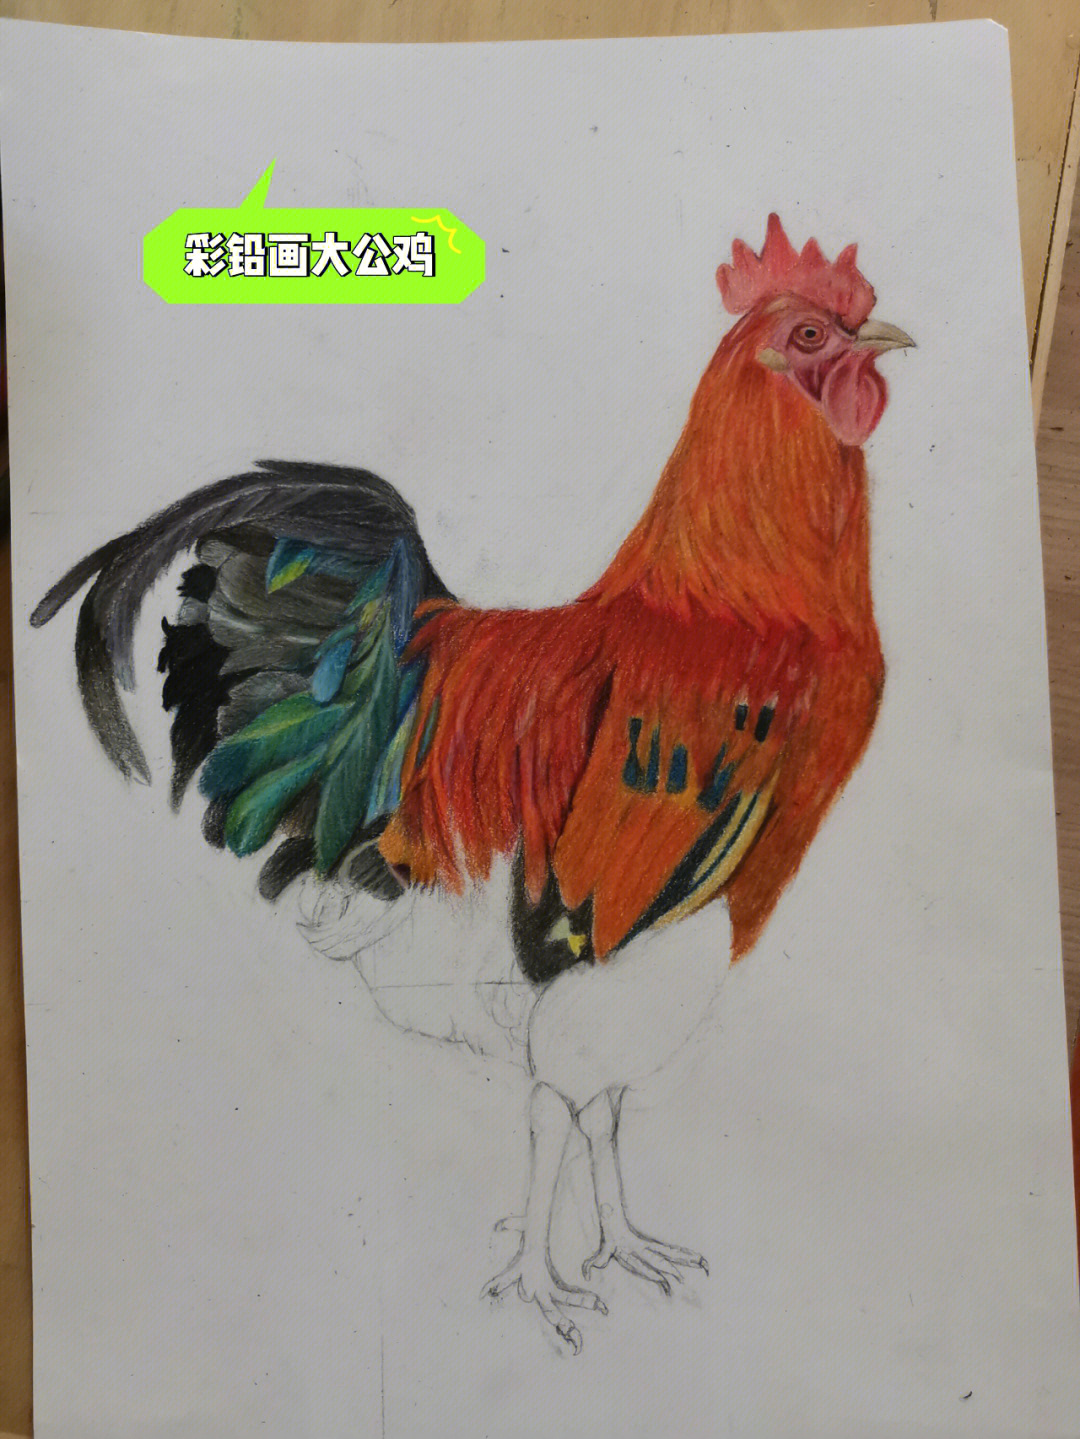 大公鸡怎么画四年级图片